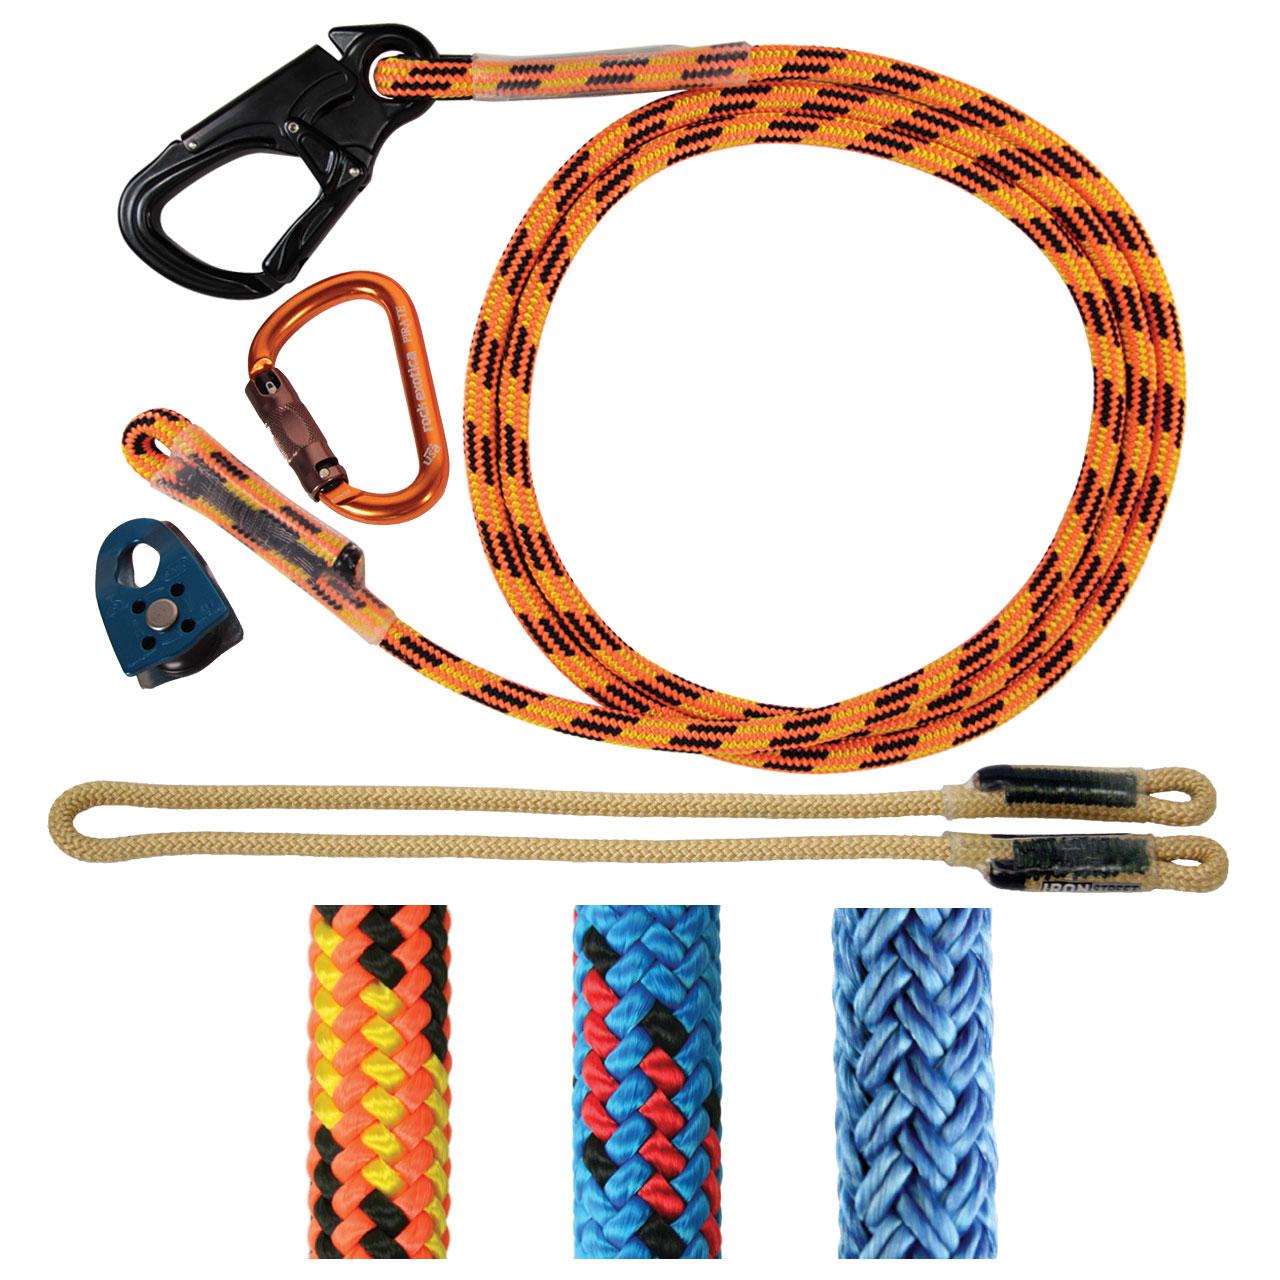 double braid lanyard kit